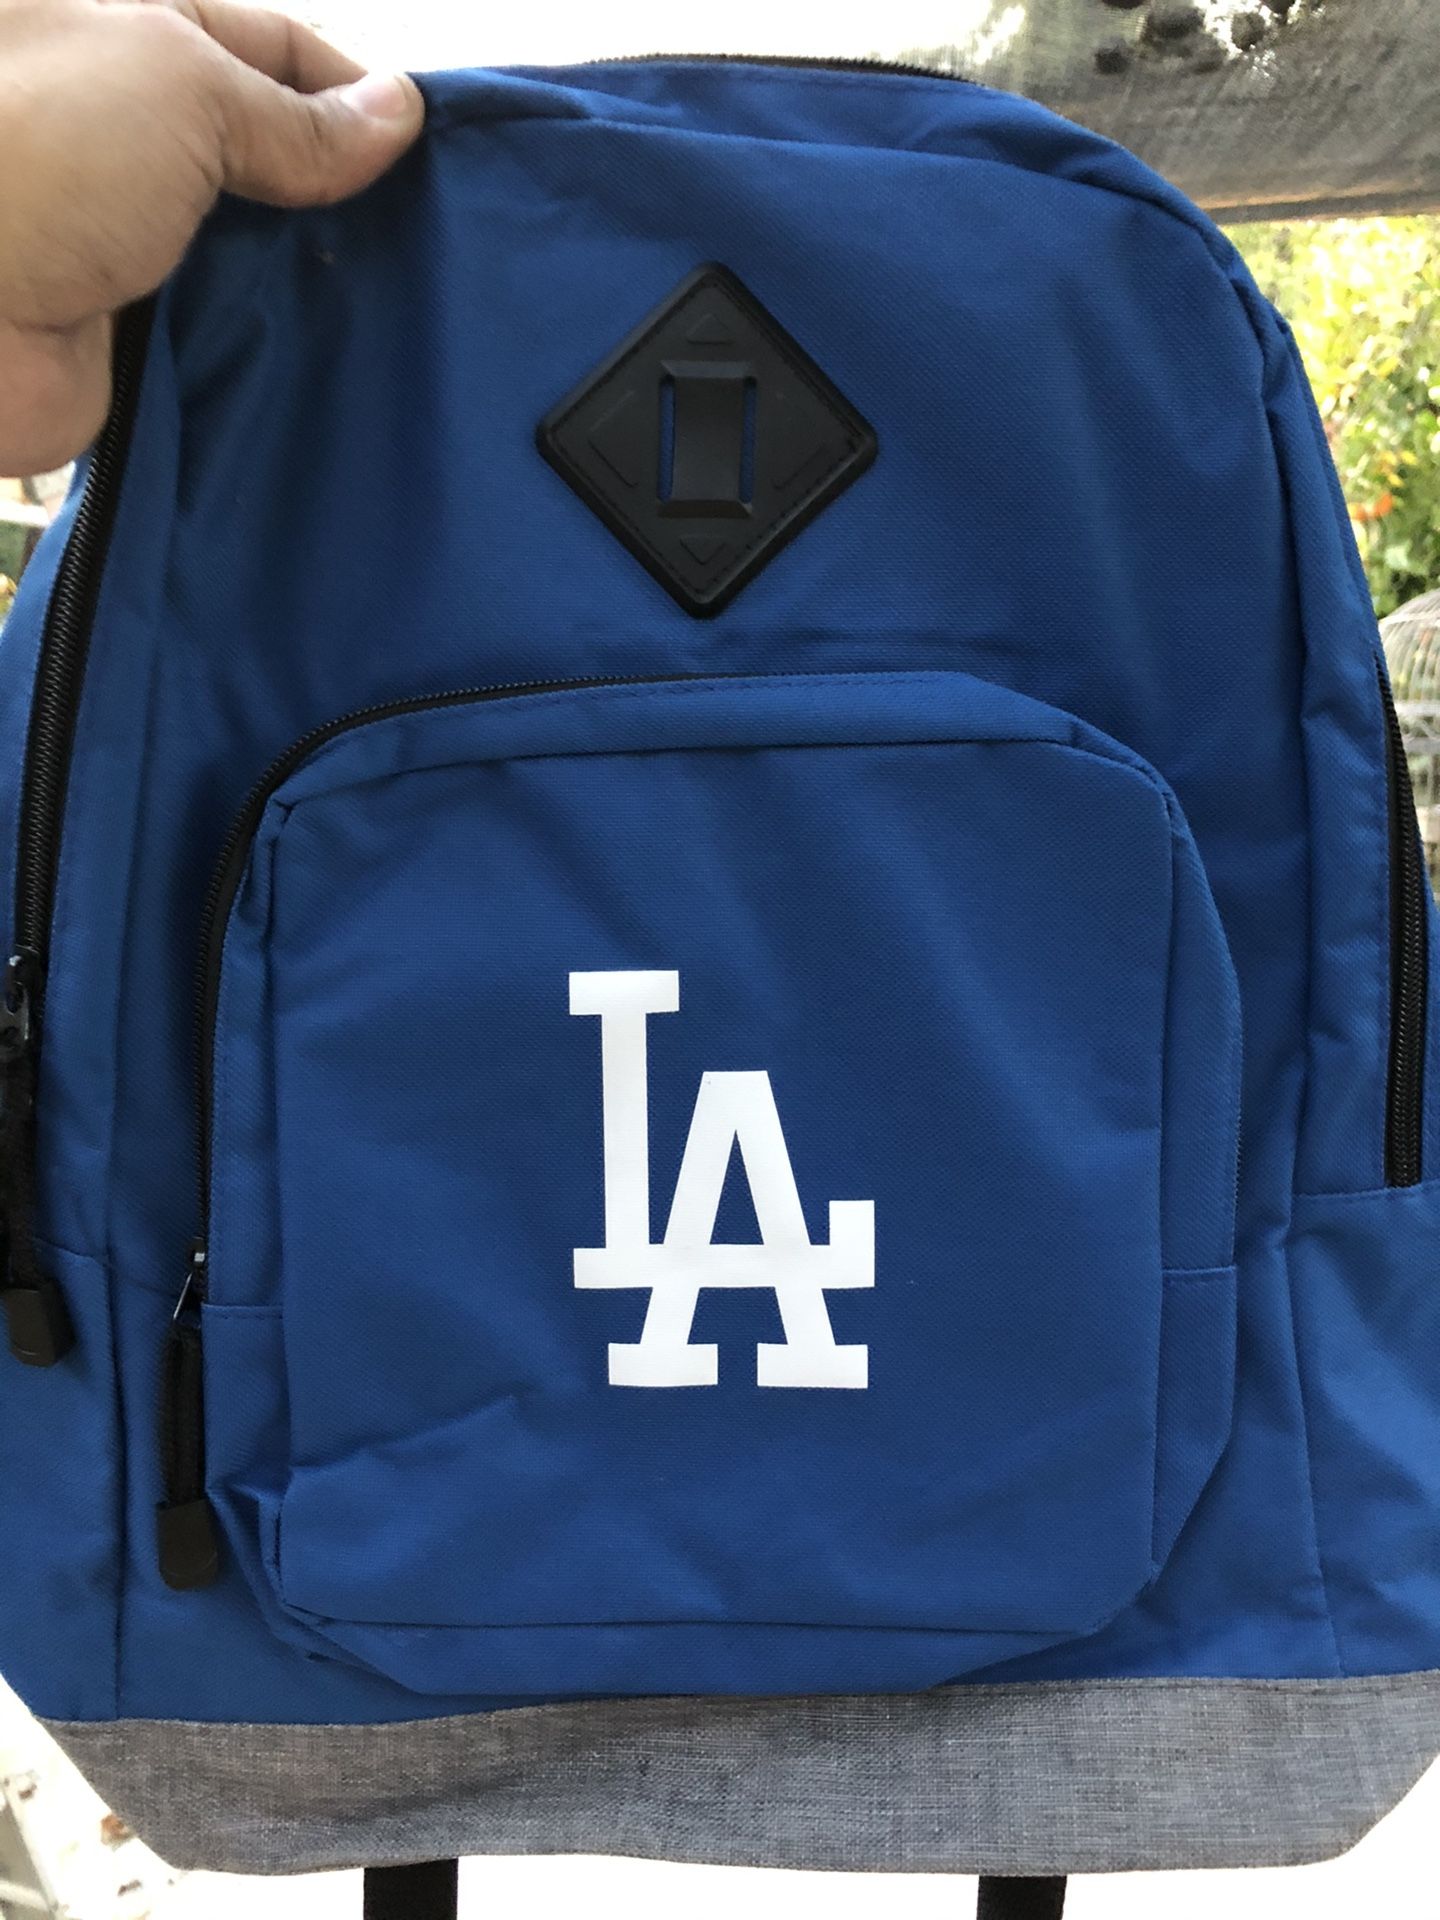 Brand new backpacks